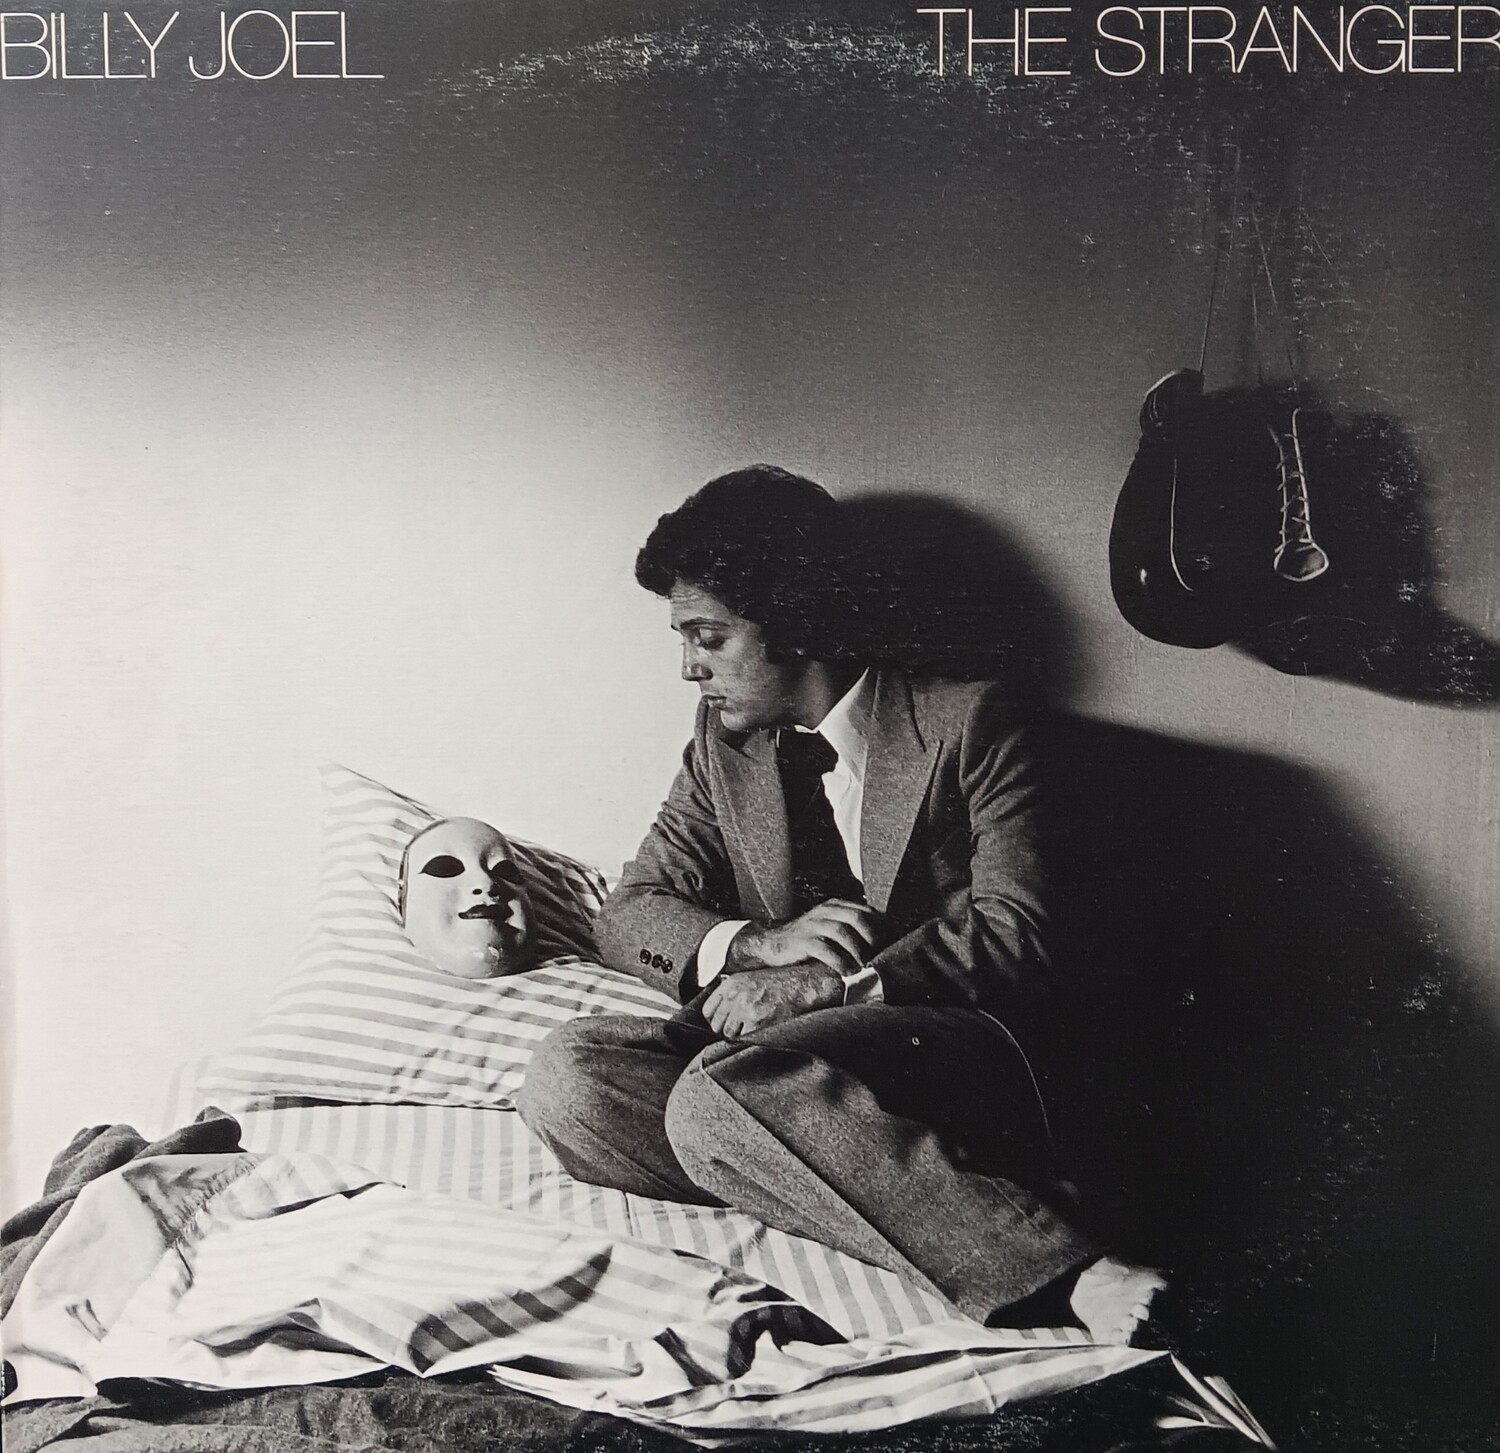 BILLY JOEL - The stranger